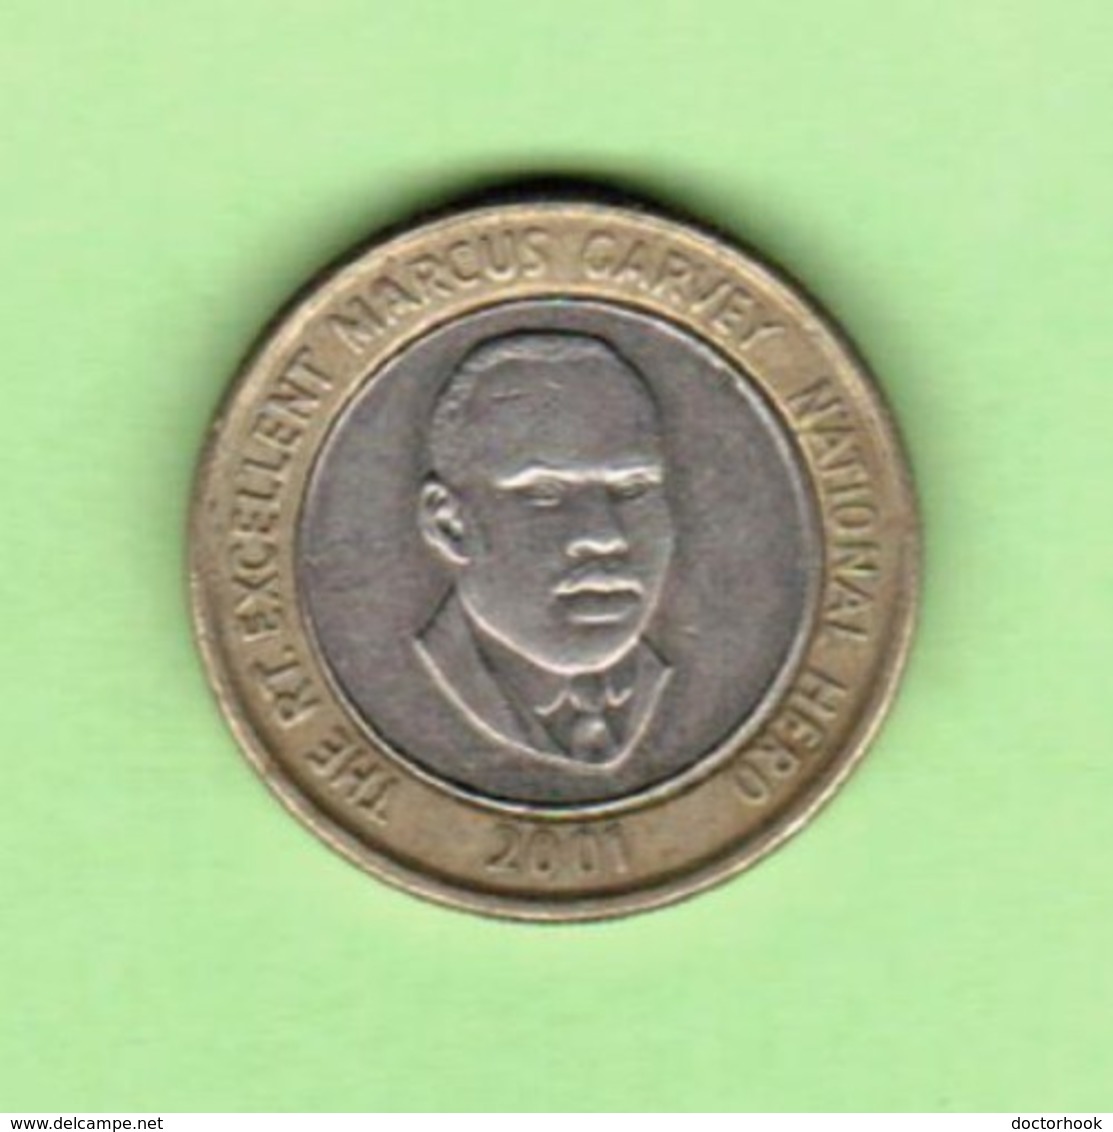 JAMAICA   $20.00 DOLLARS 2001  (KM # 182) #5205 - Jamaique